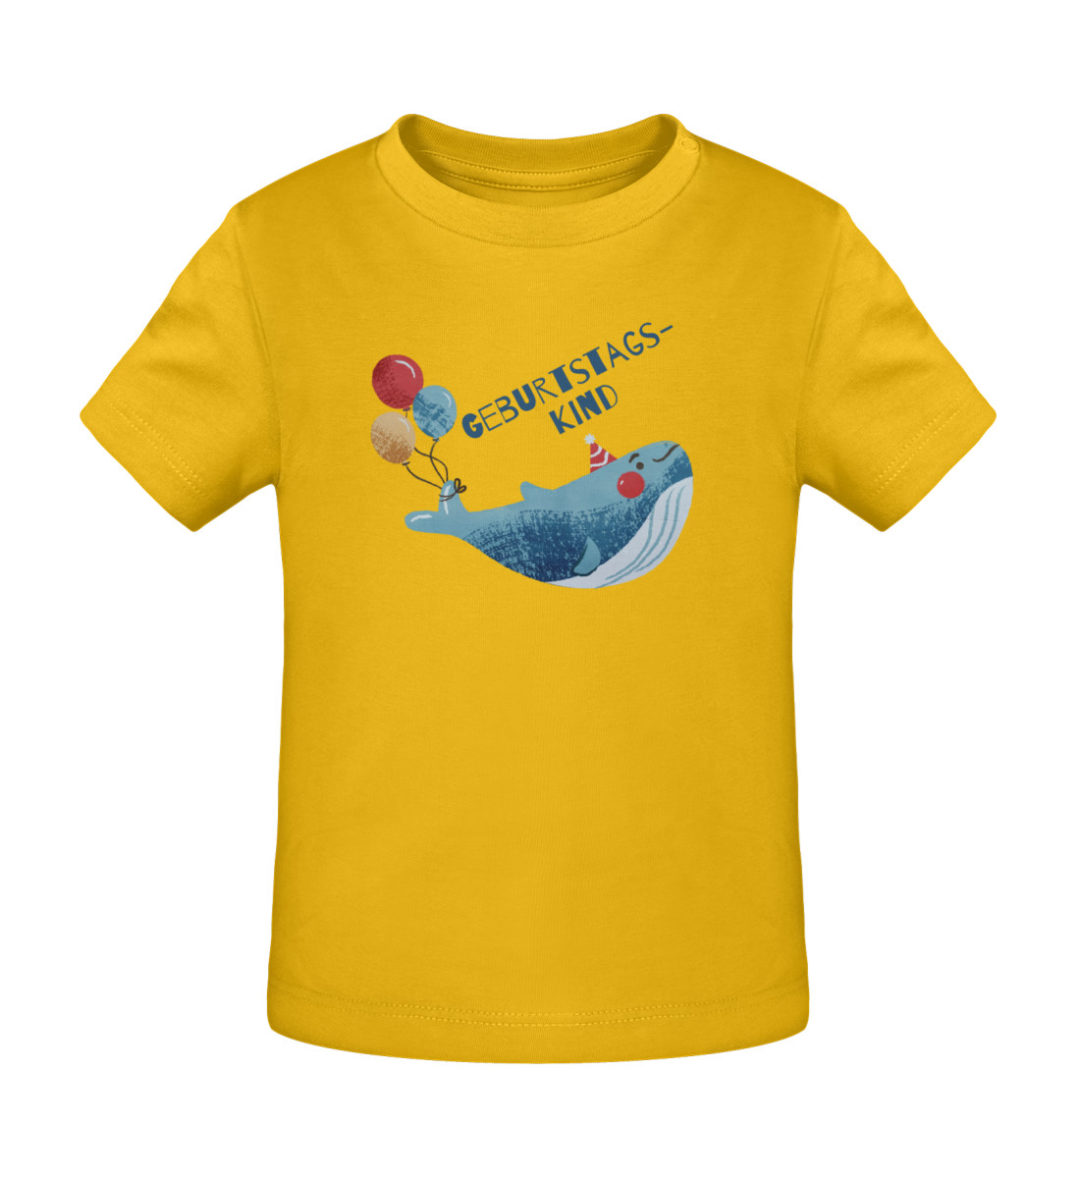 Geburtstagskind - Baby Creator T-Shirt ST/ST-6885